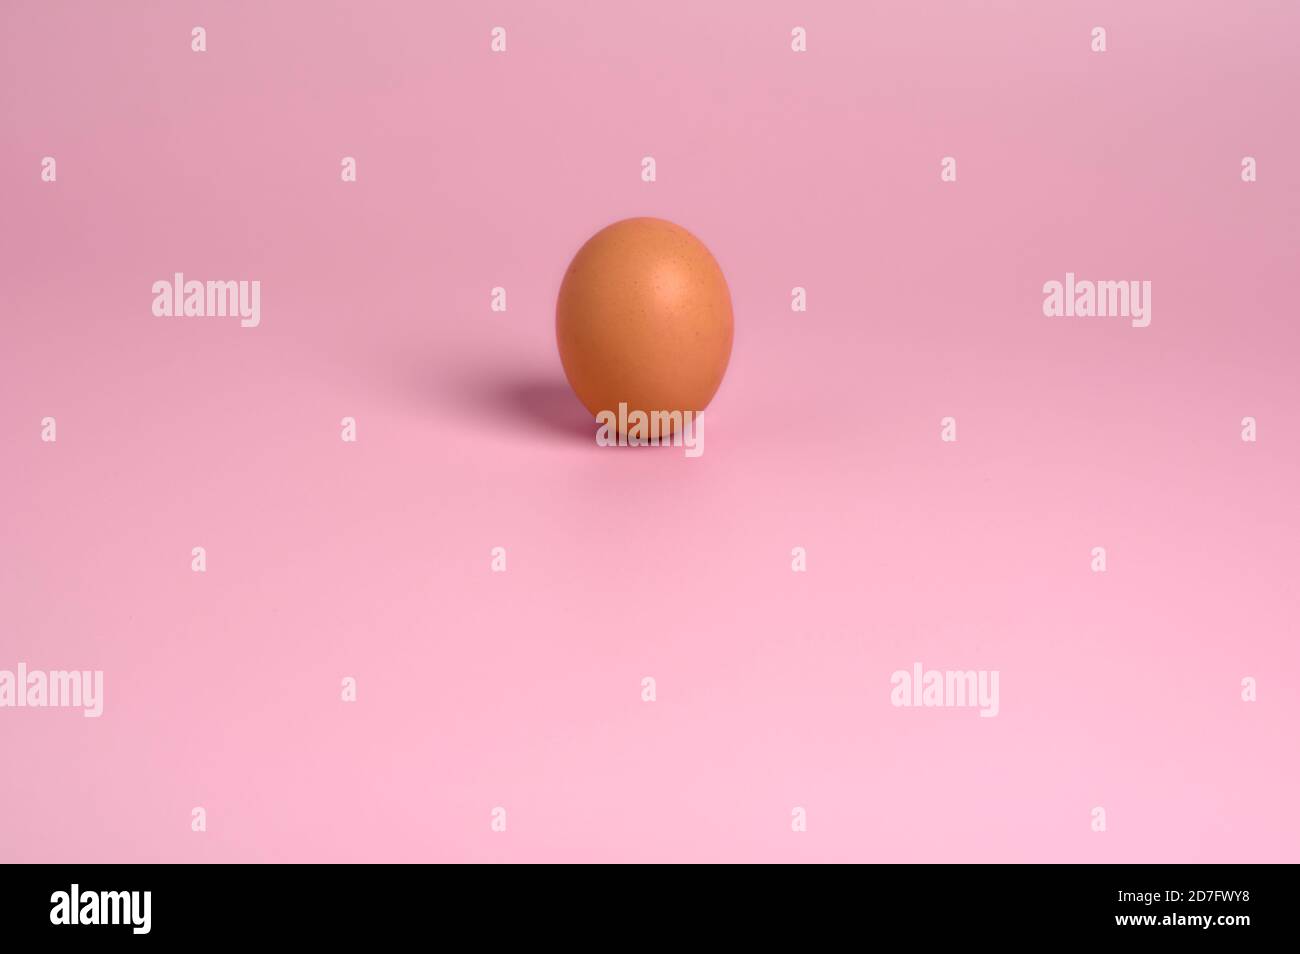 dettaglio di un uovo di gallina marrone su un rosa chiaro sfondo Foto Stock